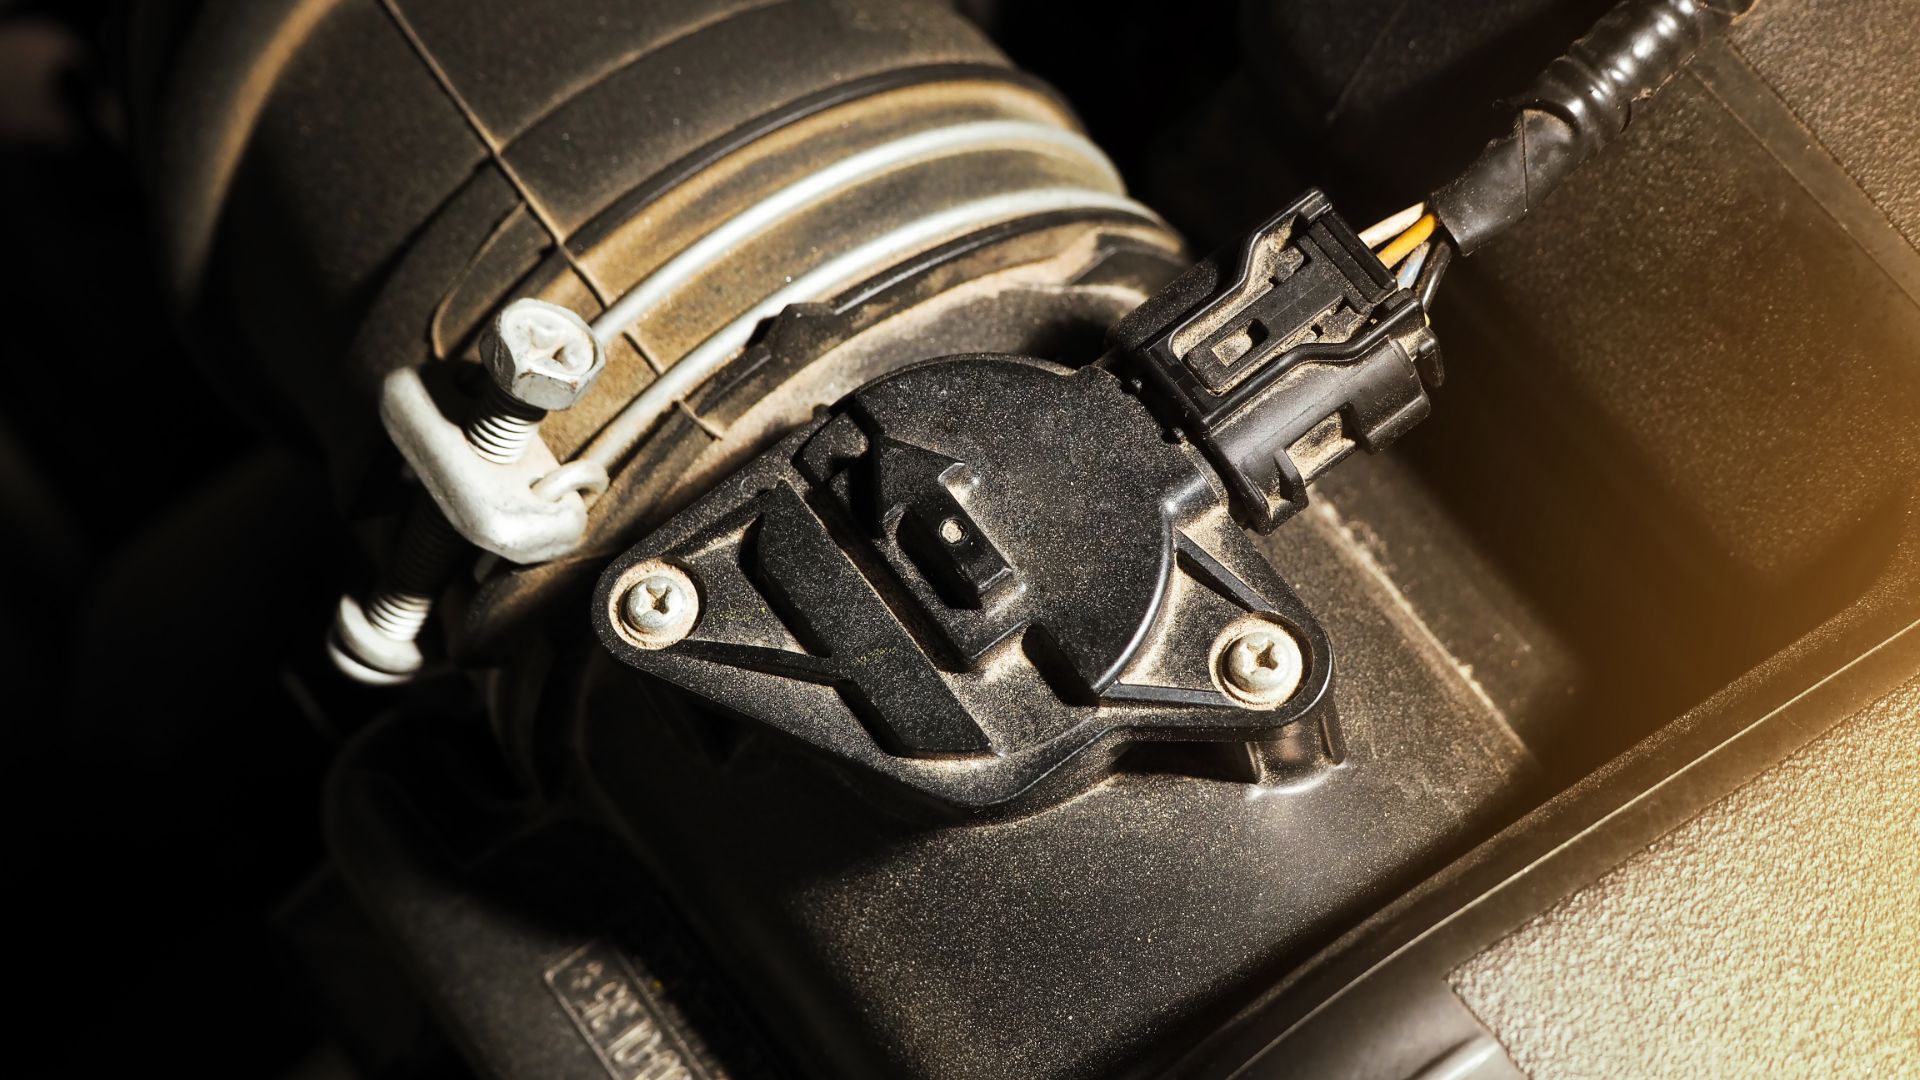 a close up view of a car's fuel pump.